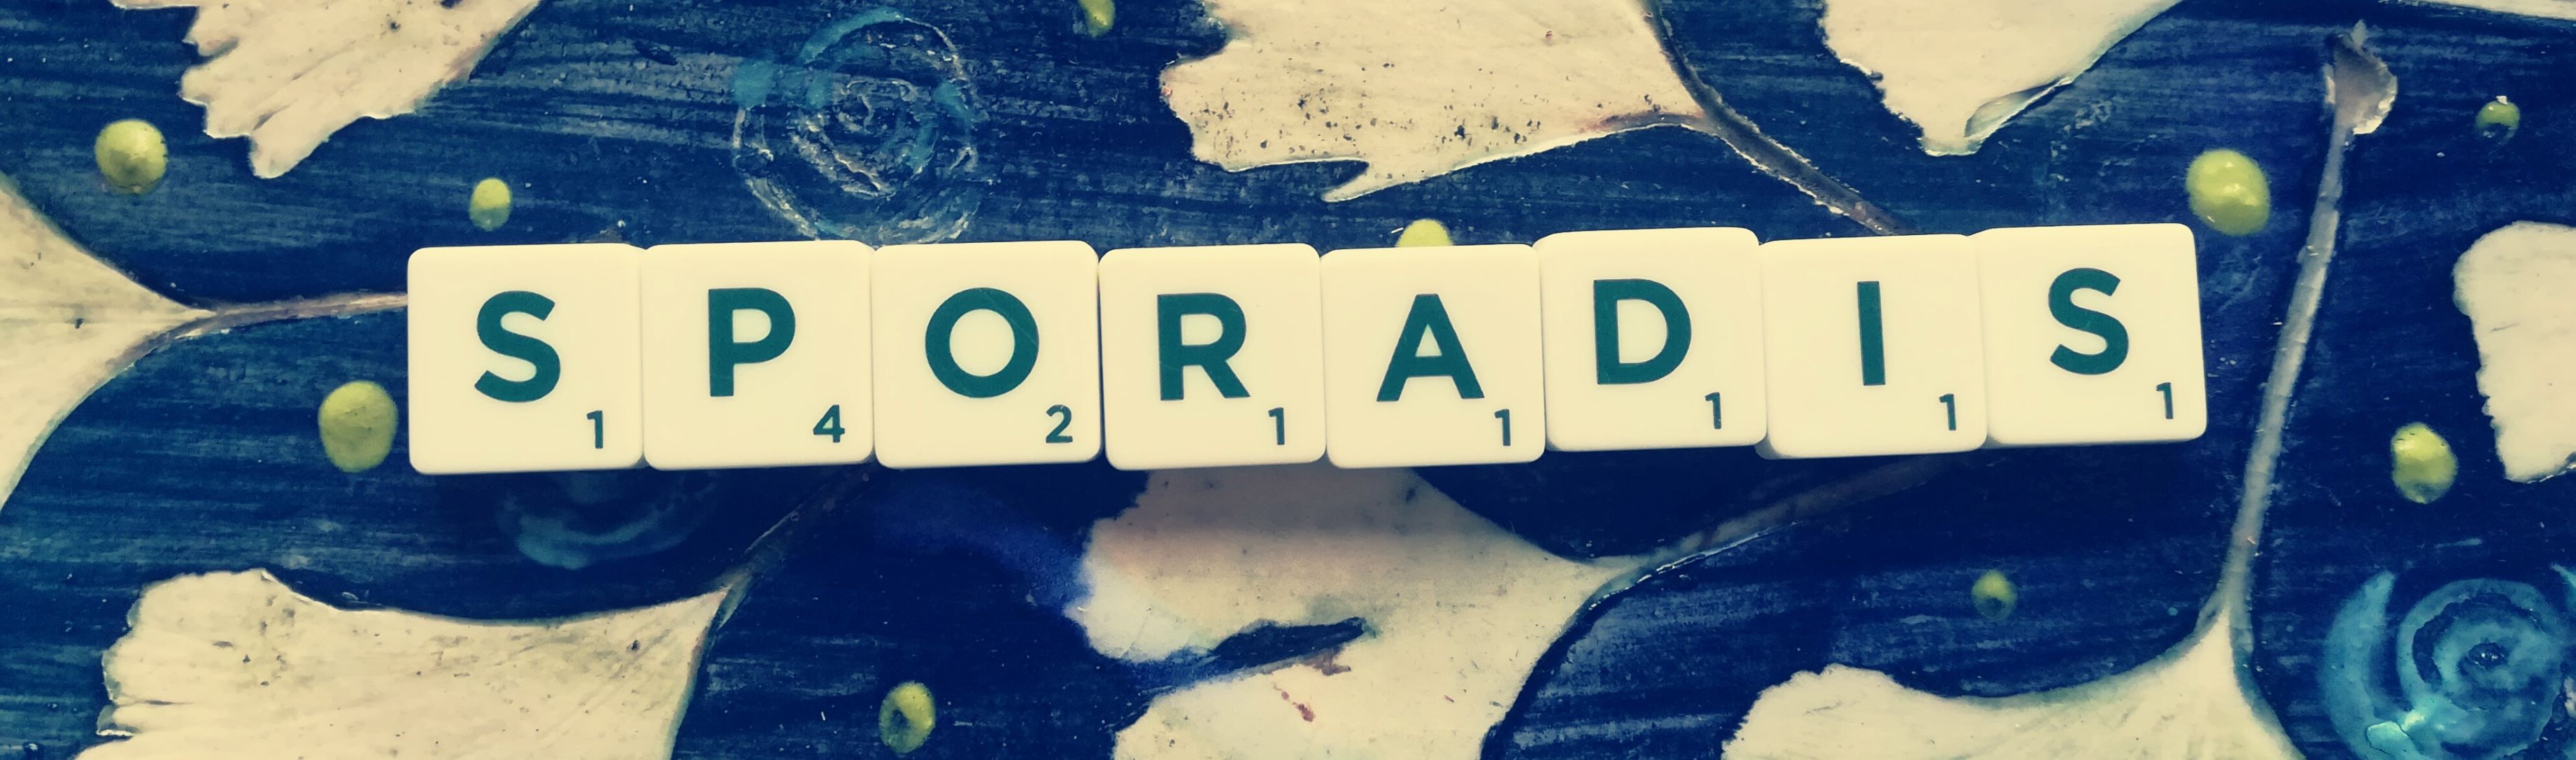 Das Wort Sporadis mit Scrabblebuchstaben gelegt